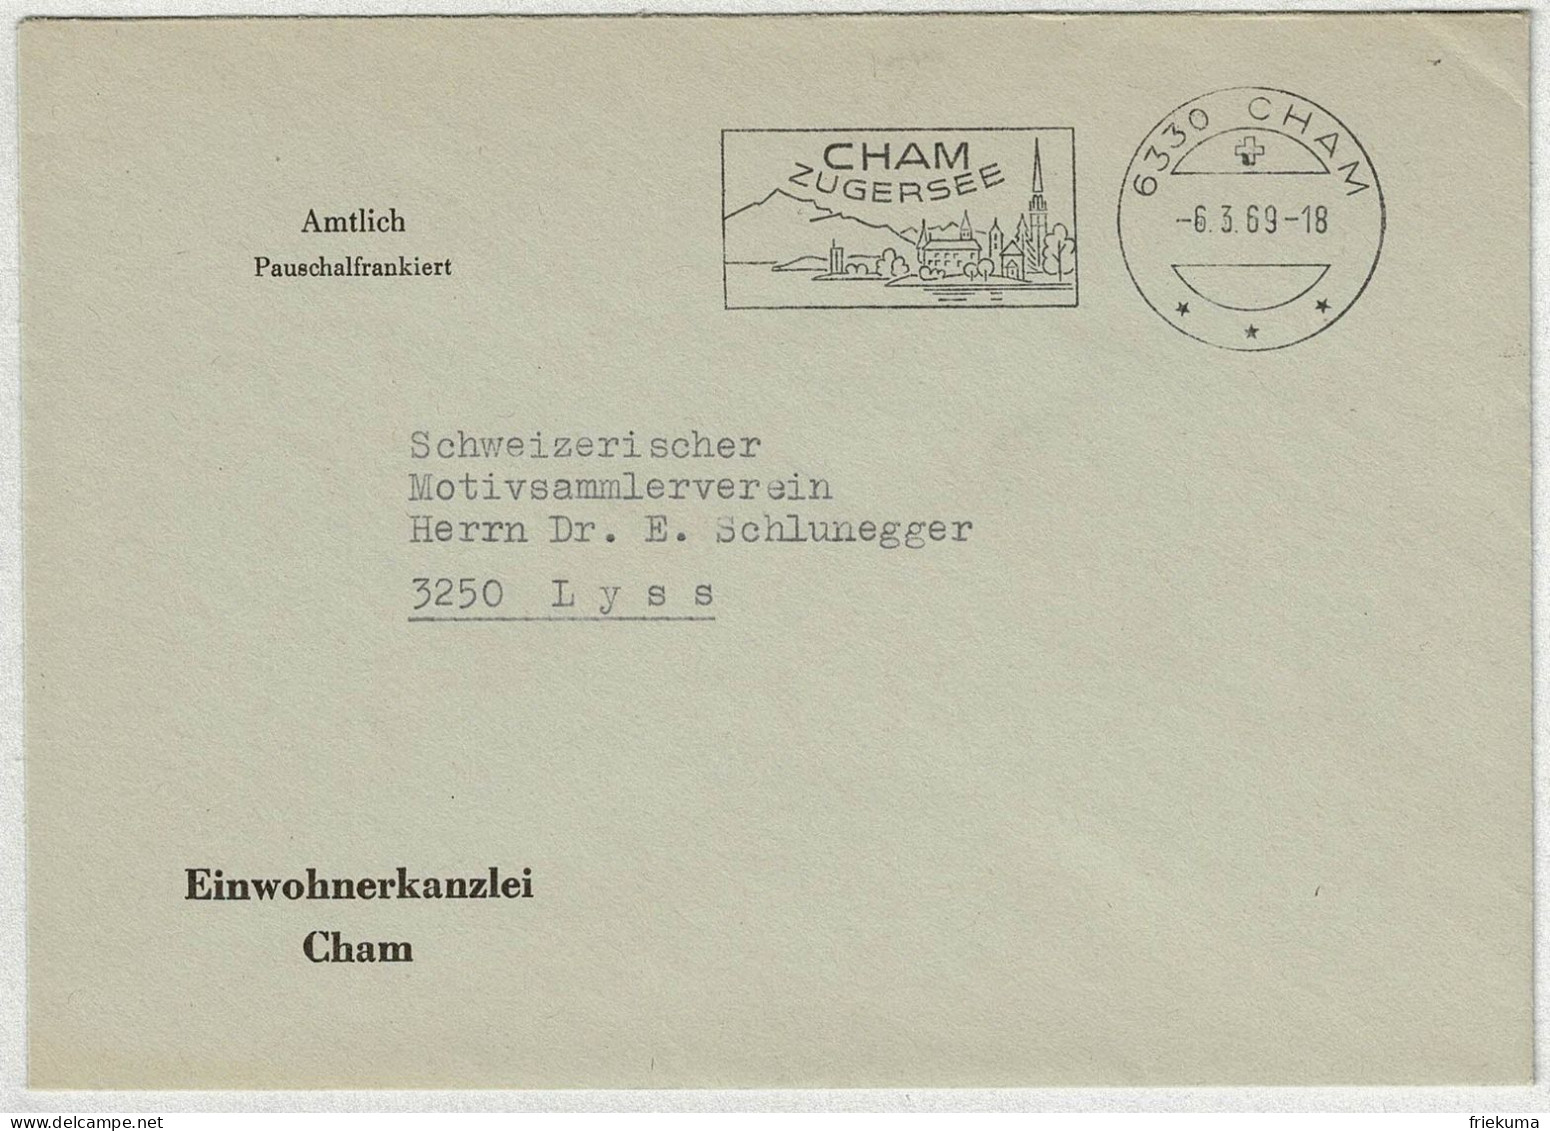 Schweiz 1969, Brief Amtlich Pauschalfrankiert Cham - Lyss - Poststempel